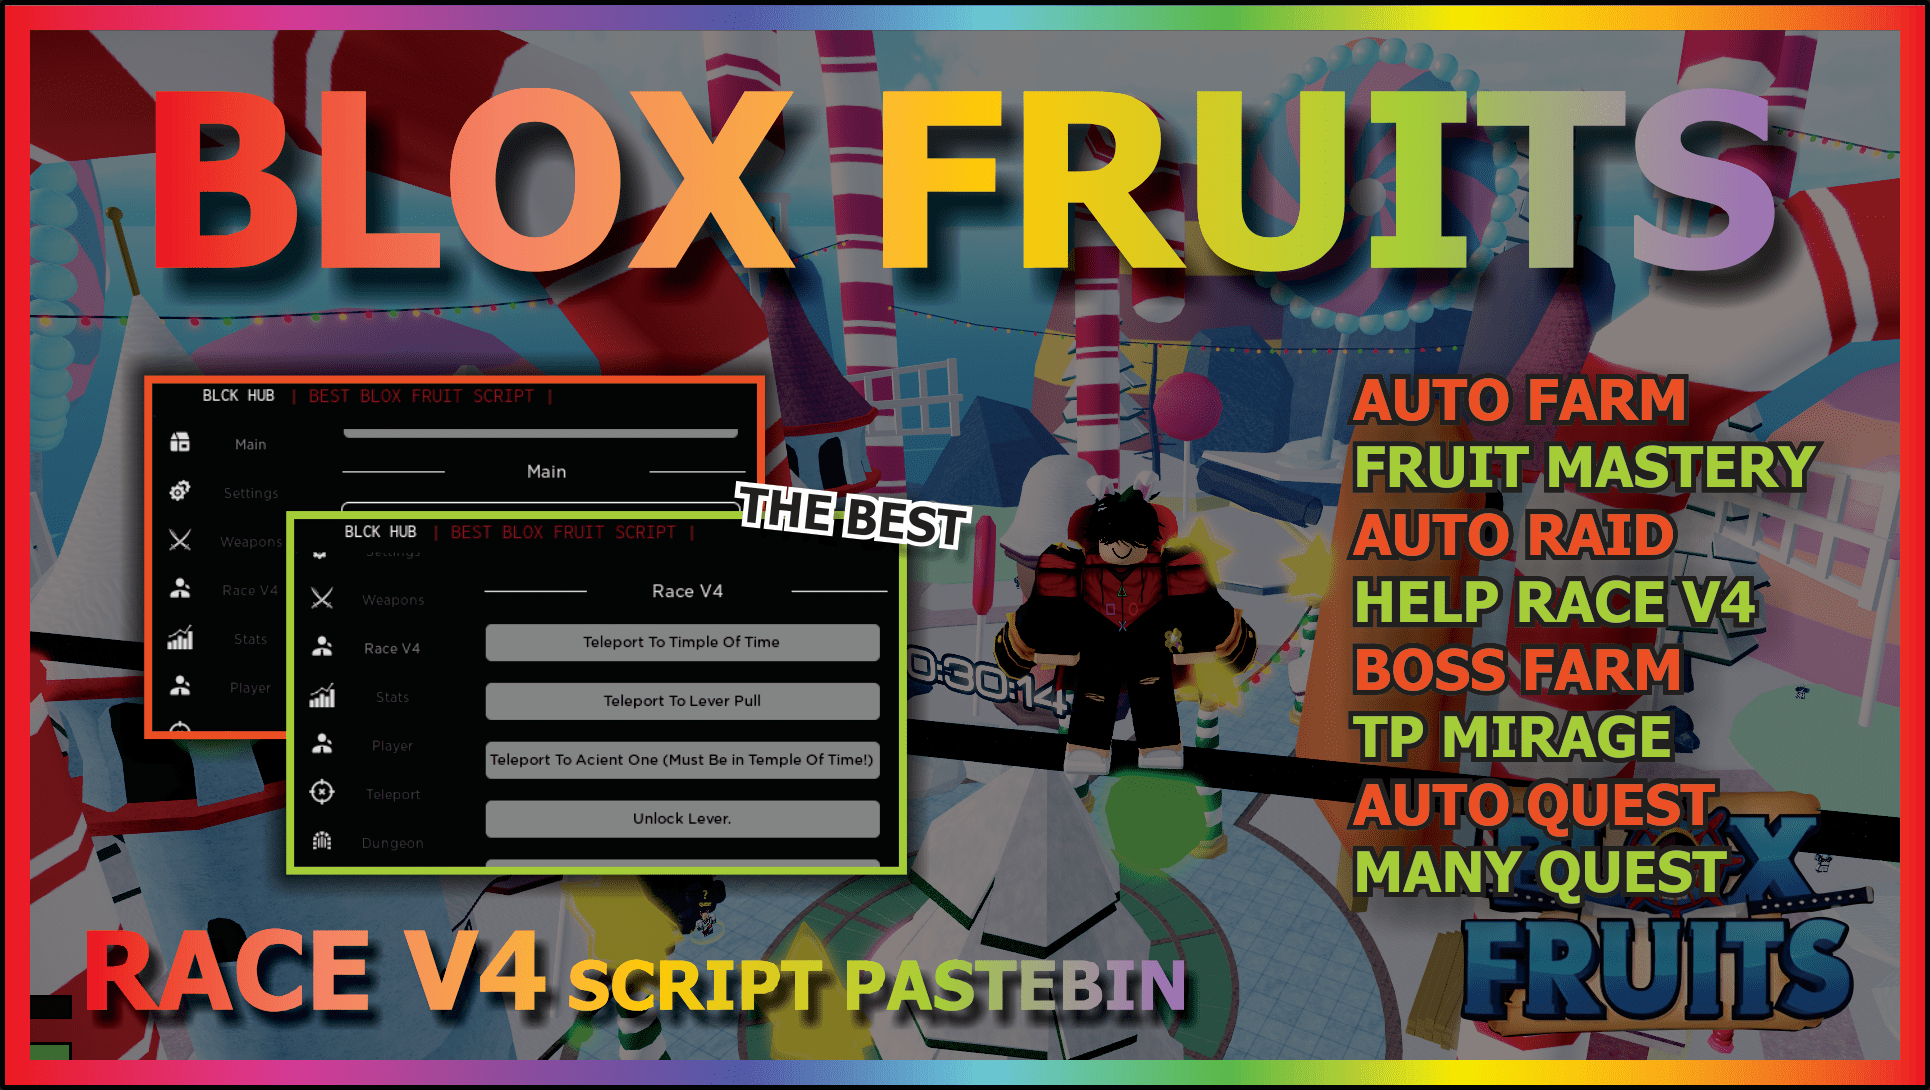 Arceus X Hydrogen Fluxus Bloxfruit Script, Race V4